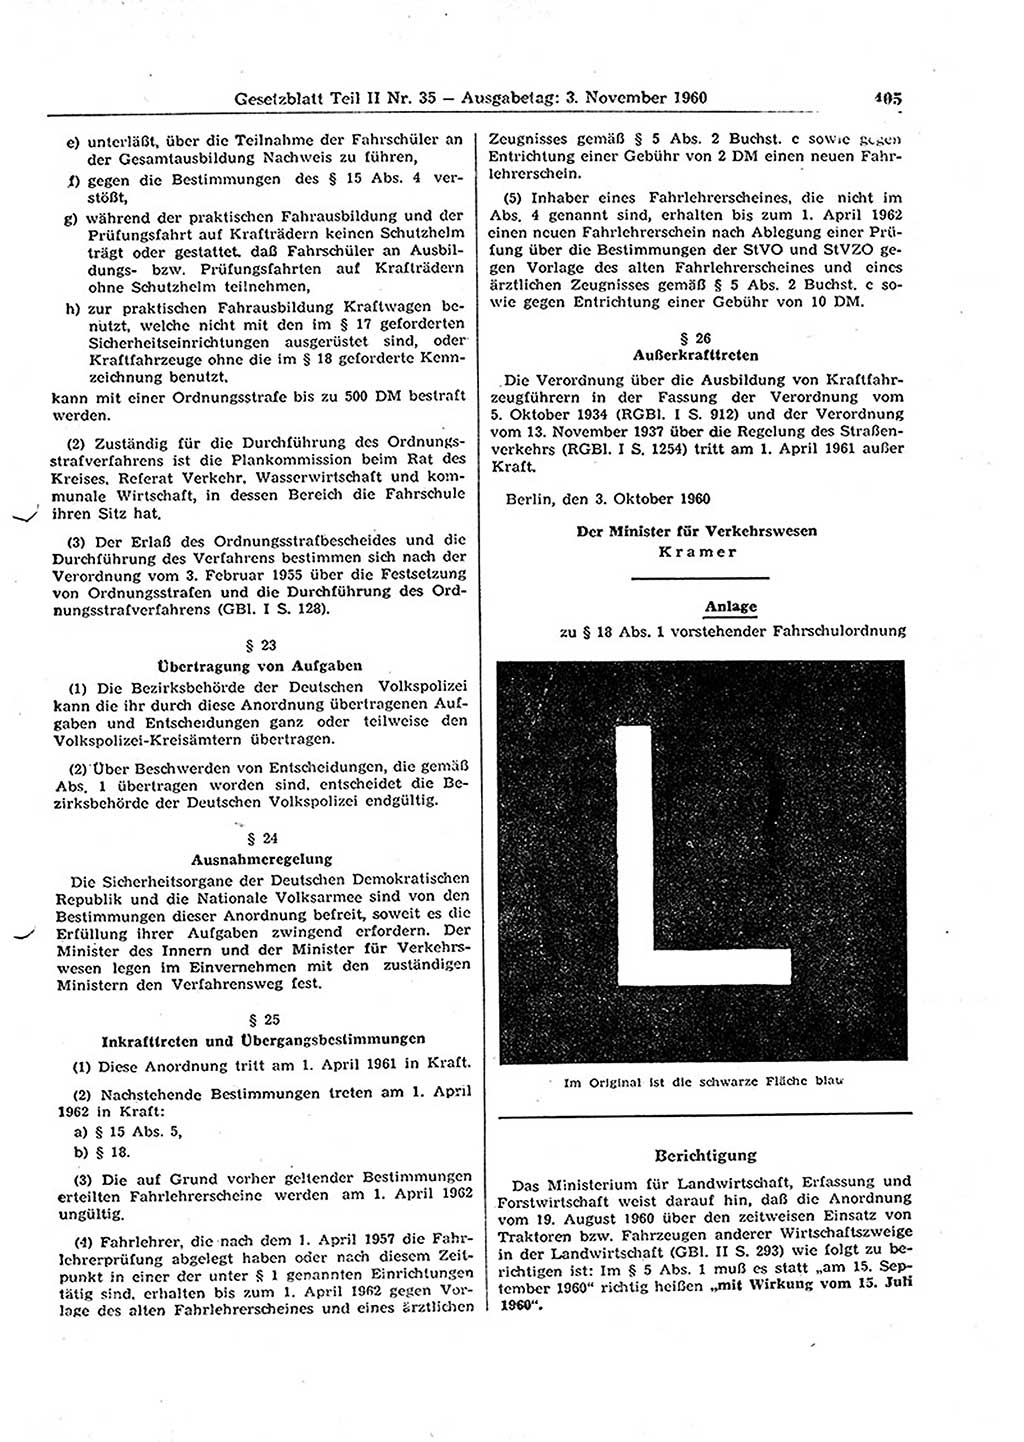 Gesetzblatt (GBl.) der Deutschen Demokratischen Republik (DDR) Teil ⅠⅠ 1960, Seite 405 (GBl. DDR ⅠⅠ 1960, S. 405)